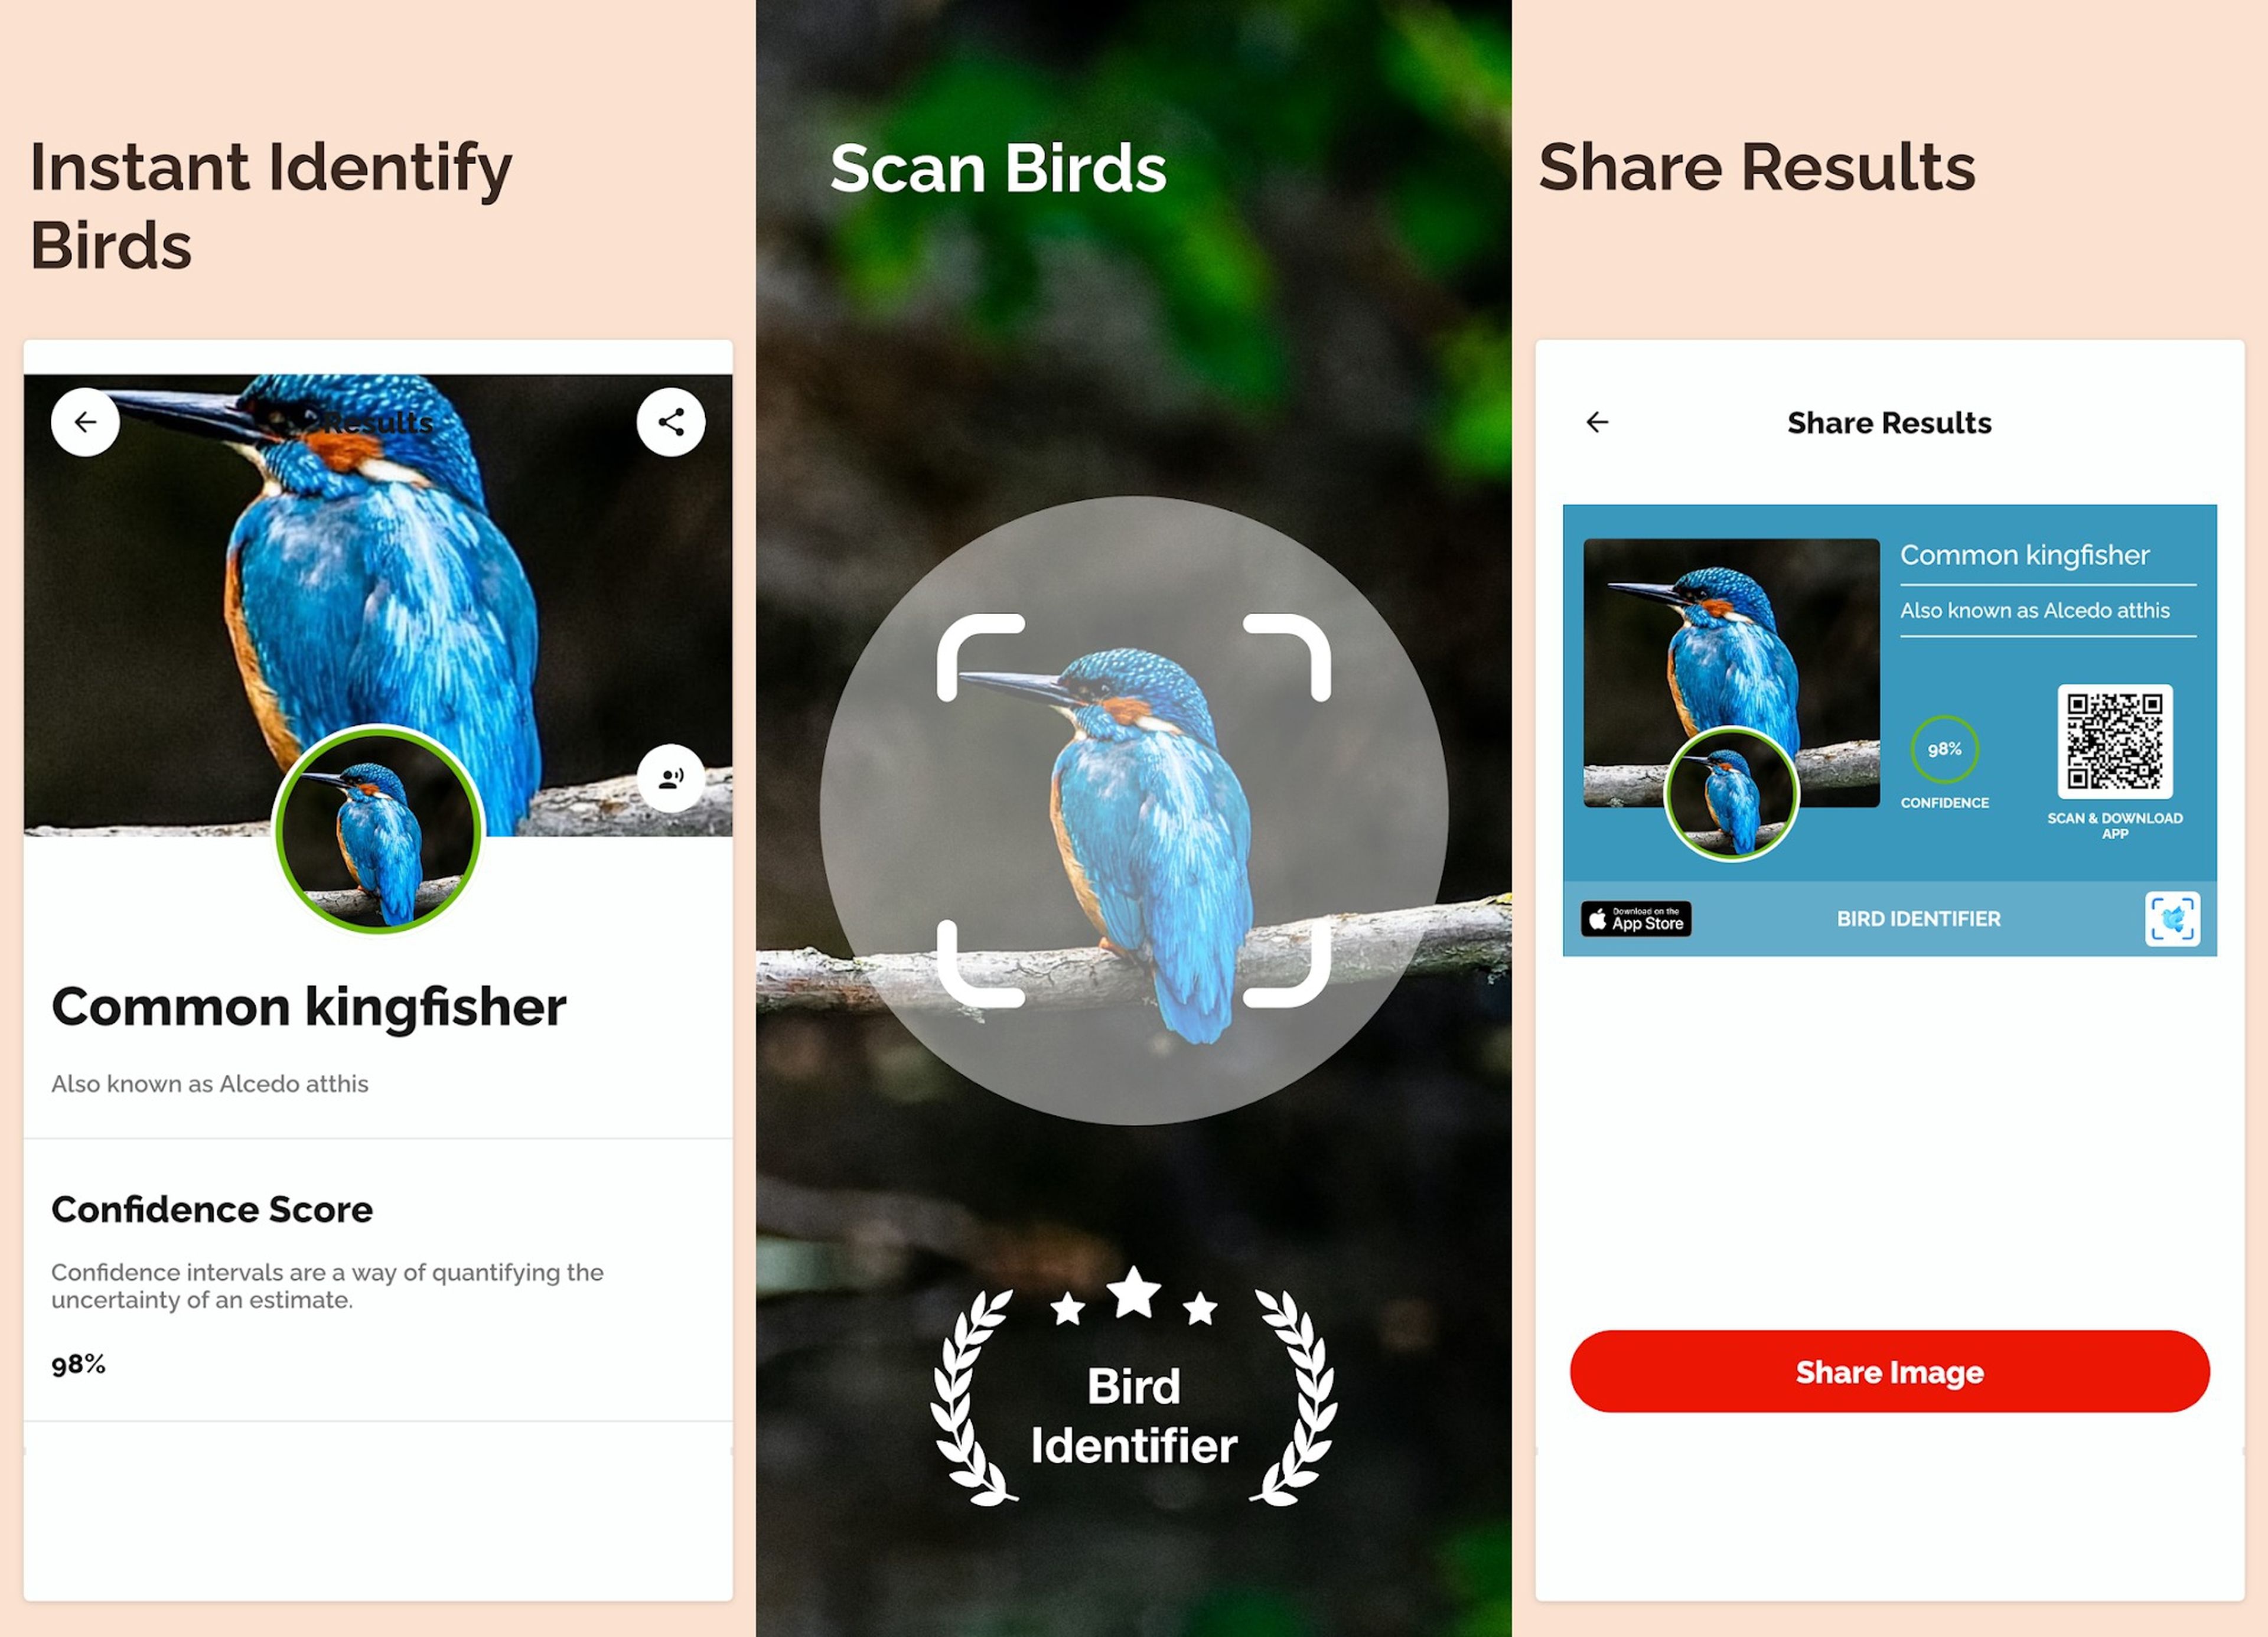 Las 7 mejores aplicaciones para móviles Android con las que identificar aves